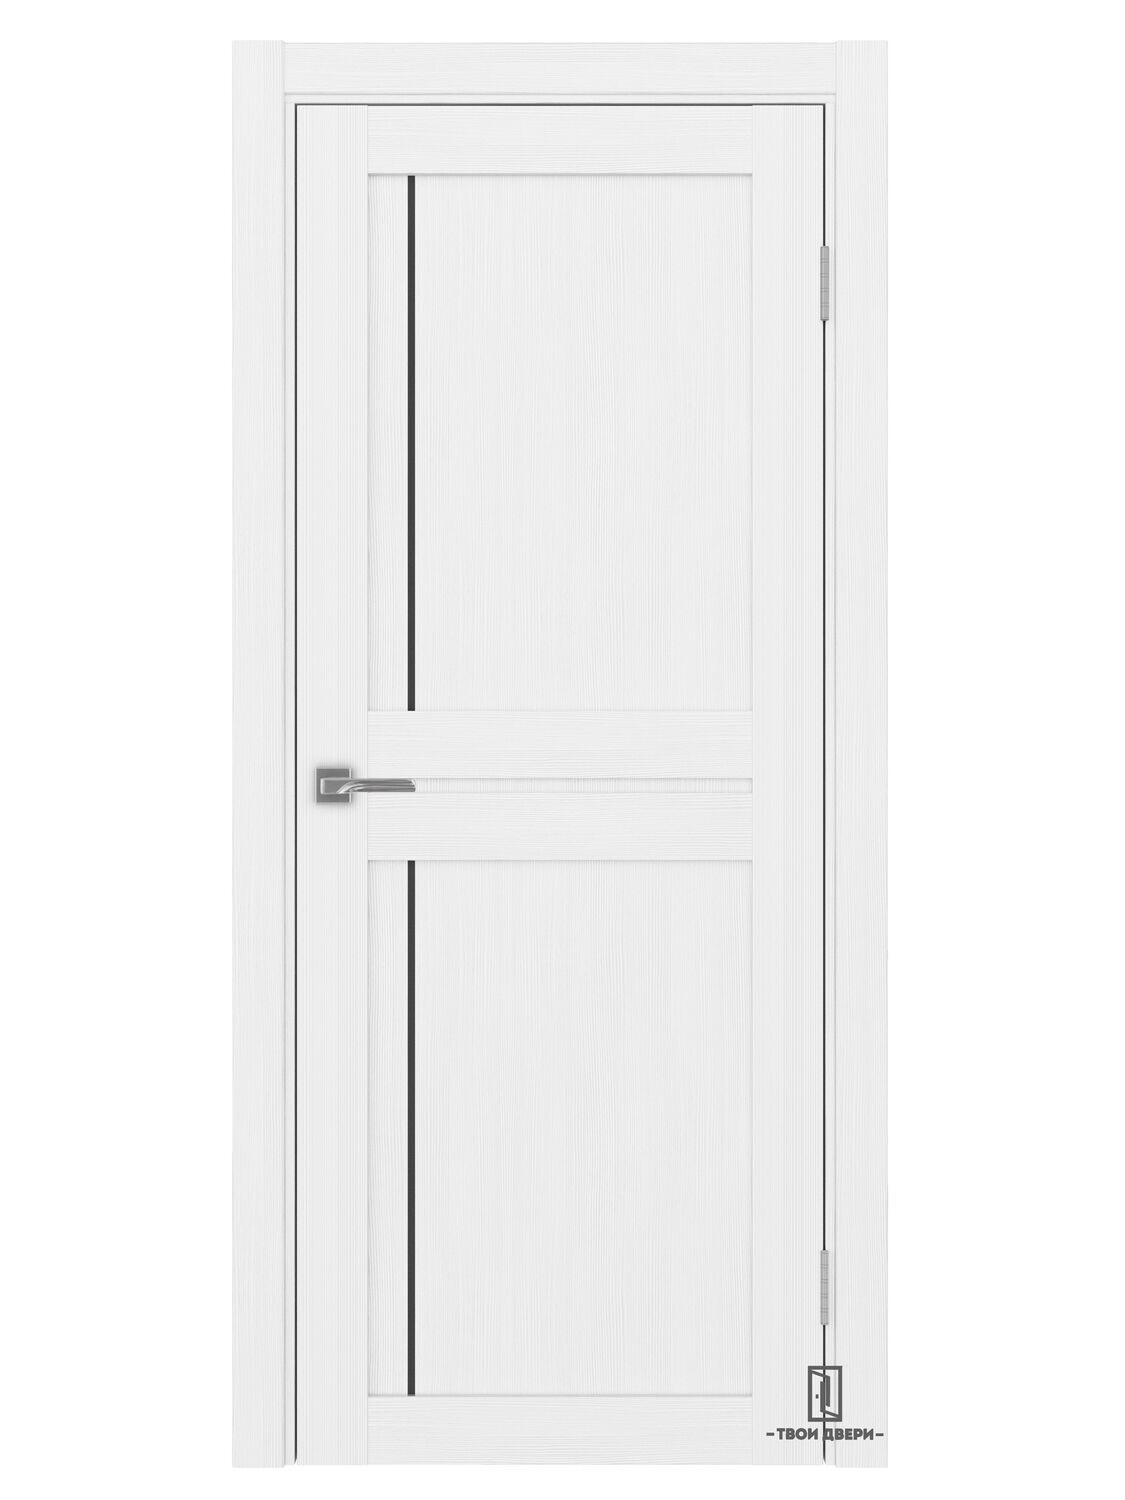 Дверь межкомнатная АПП 523.111 (черный молдинг), белый лед